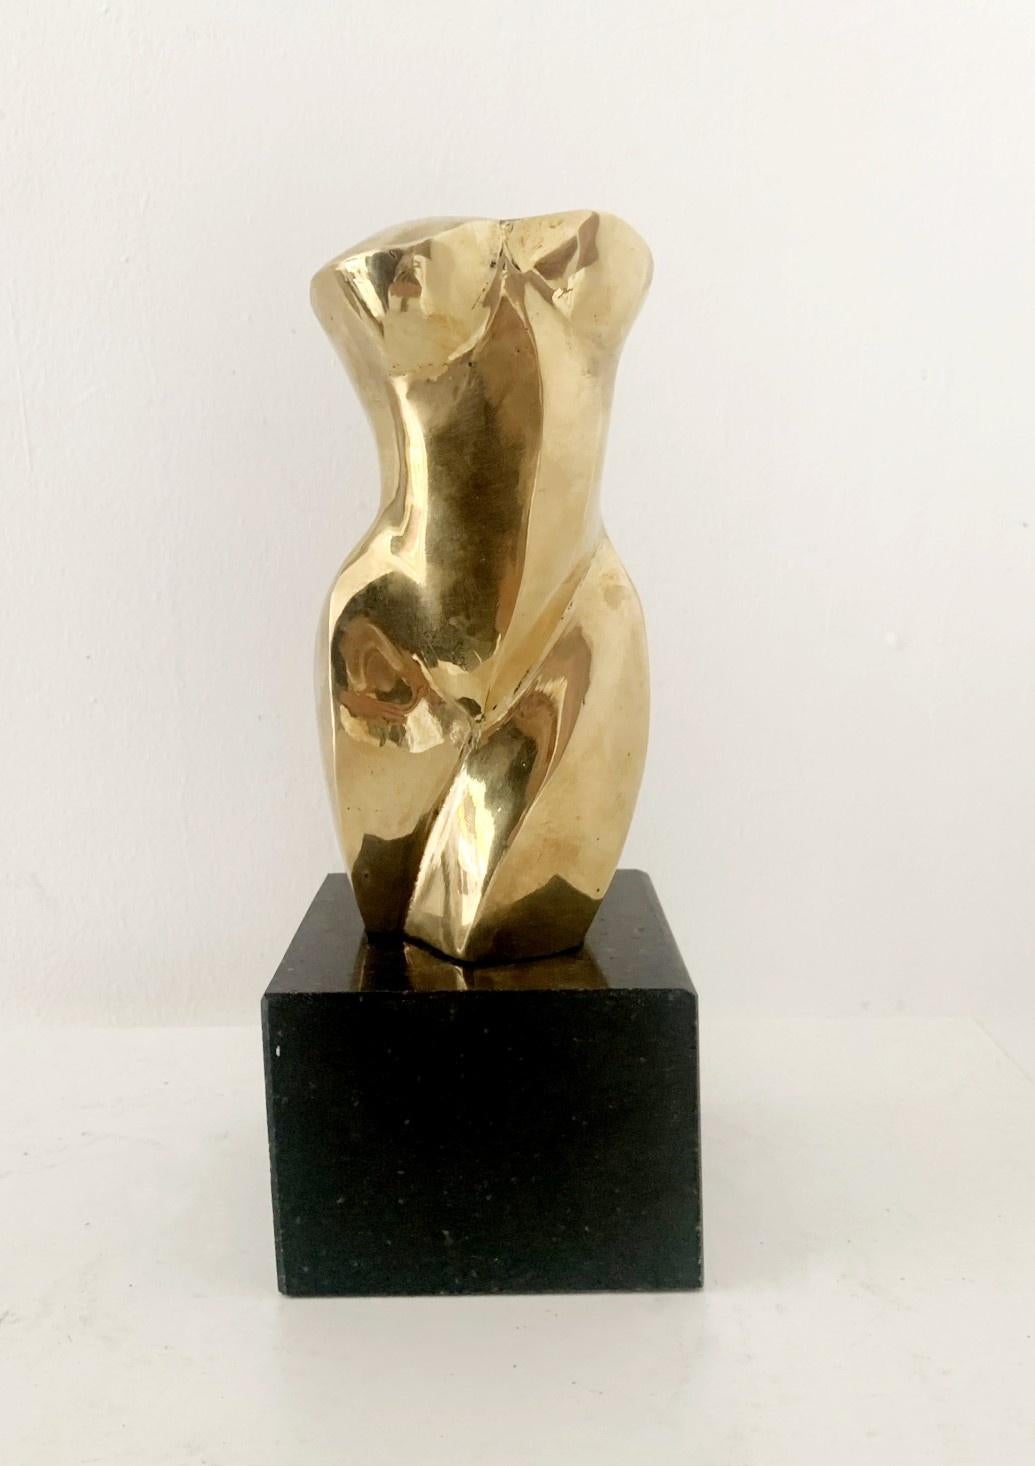 Ryszard Piotrowski Figurative Sculpture – Akt - 21. Jahrhundert, Zeitgenössische figurative Skulptur aus Messing, Polnische Kunst